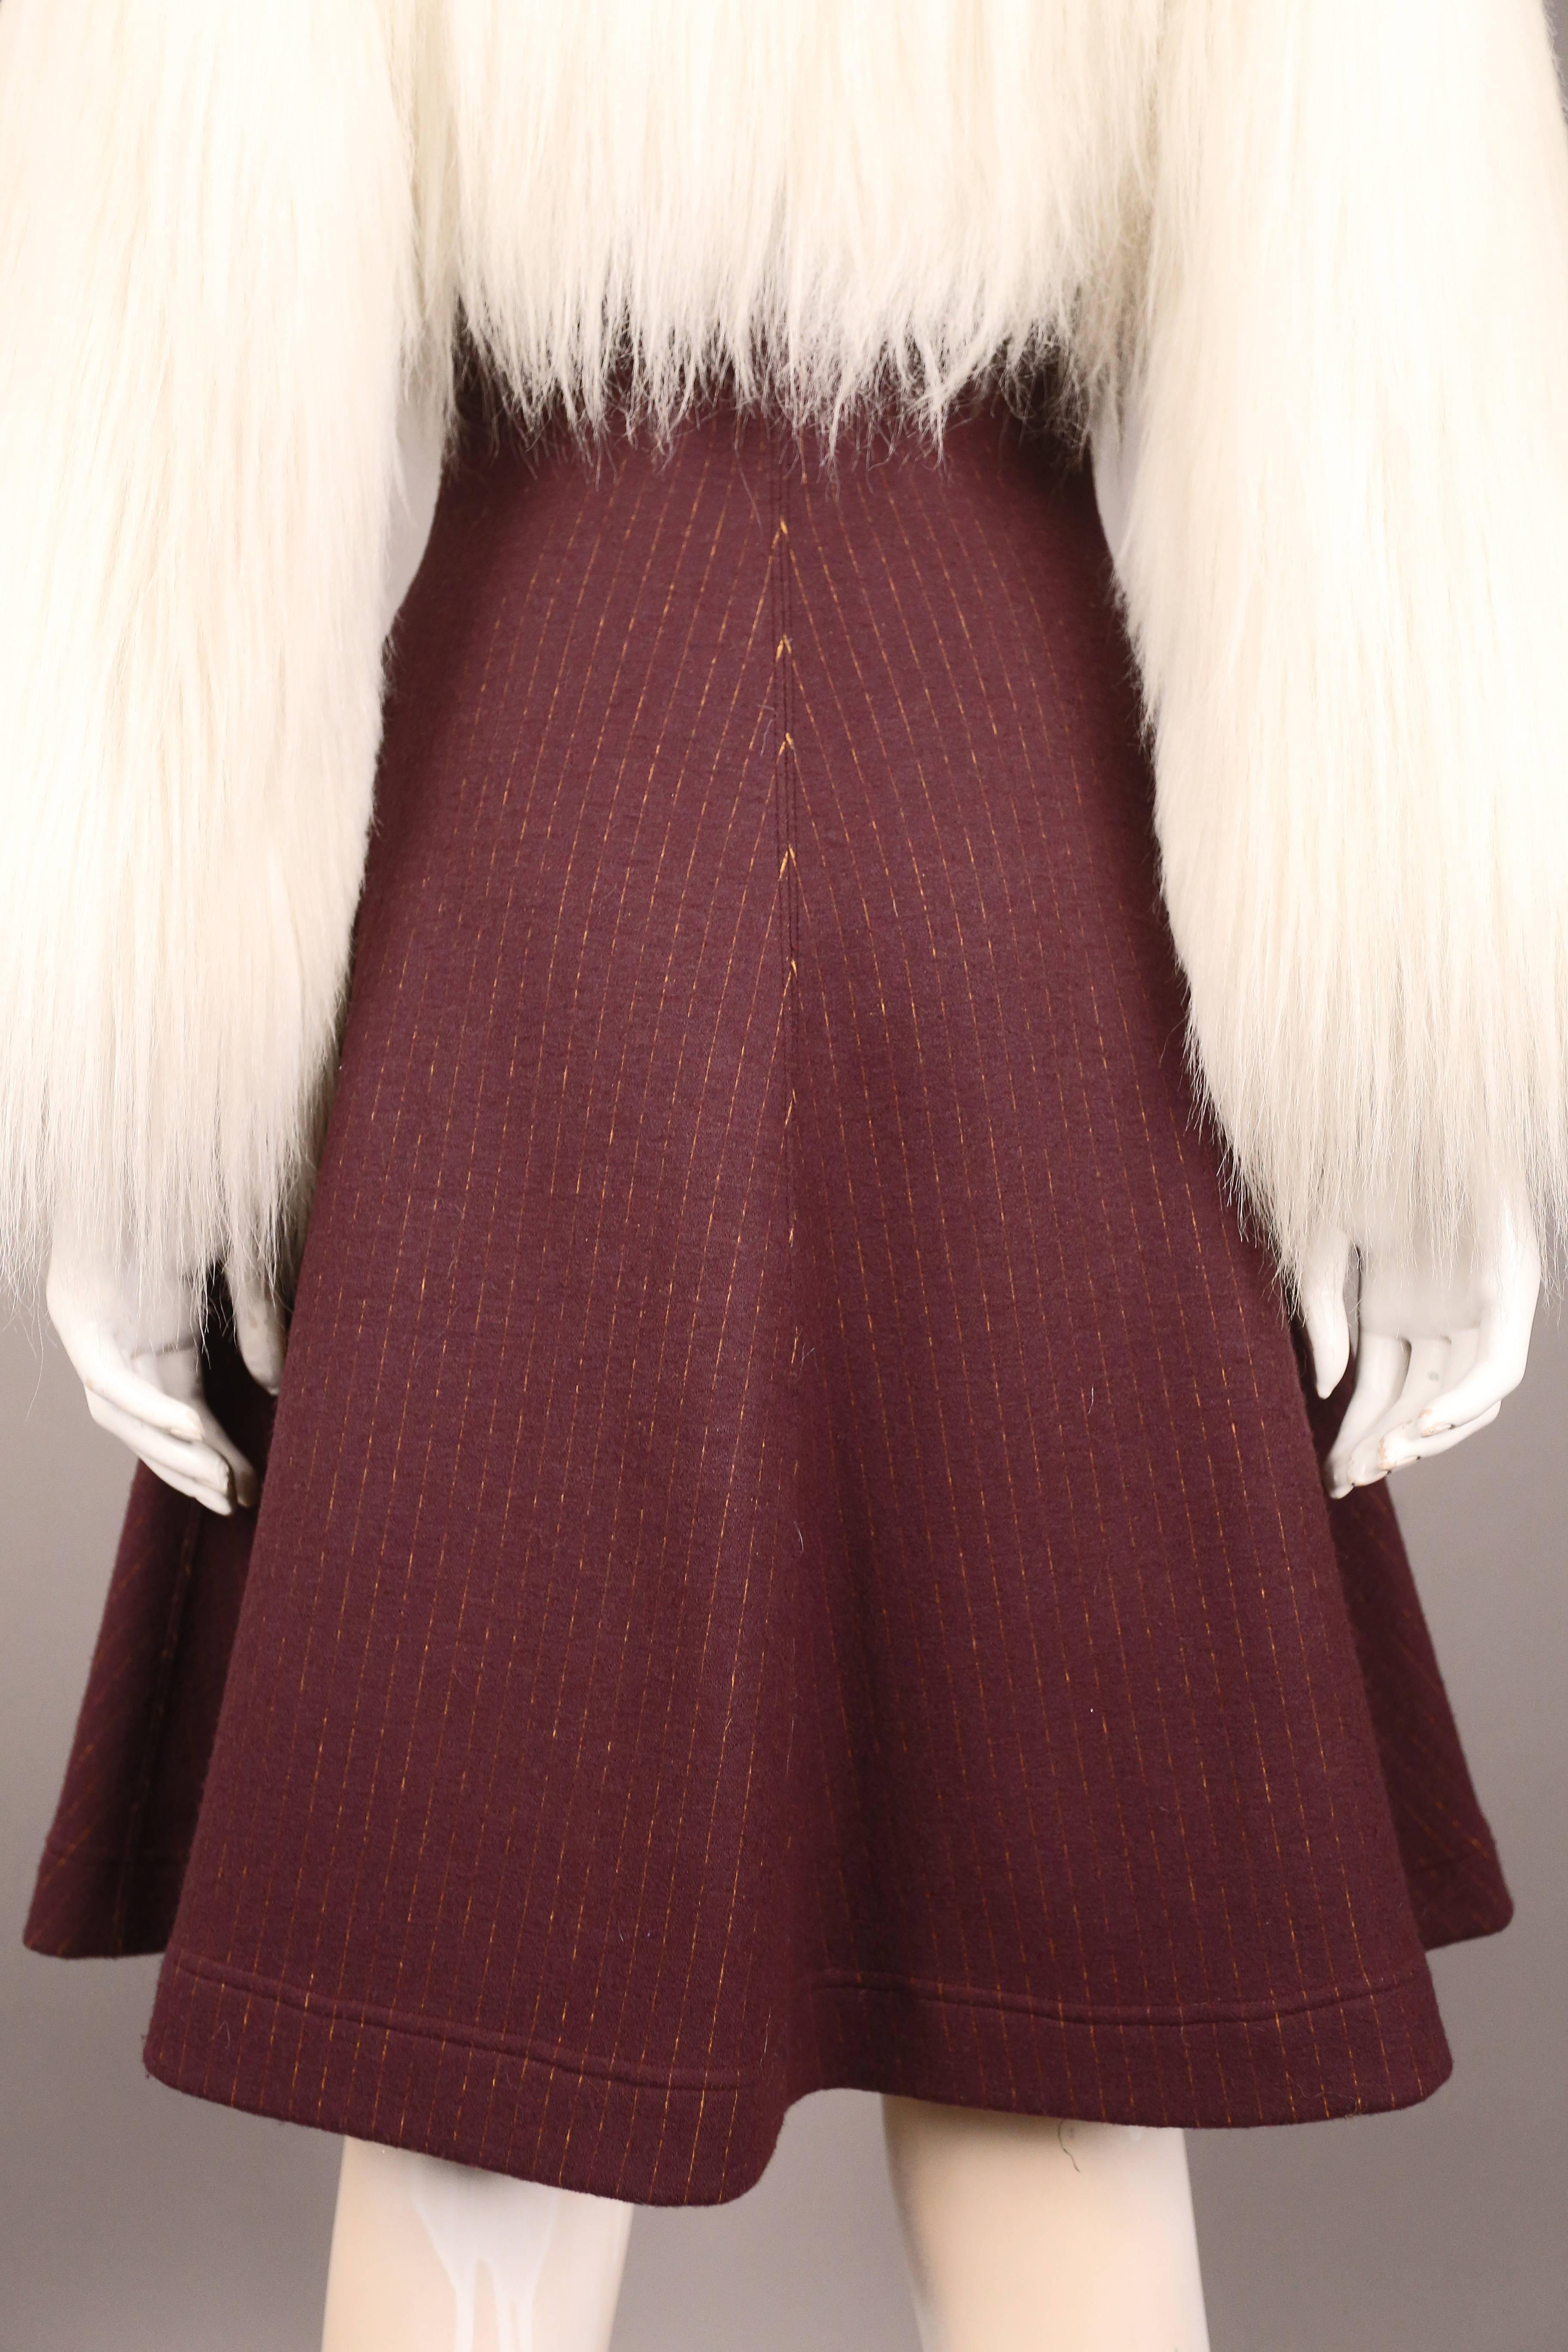 Jean Paul Gaultier faux fur dress coat, c. 1993 1